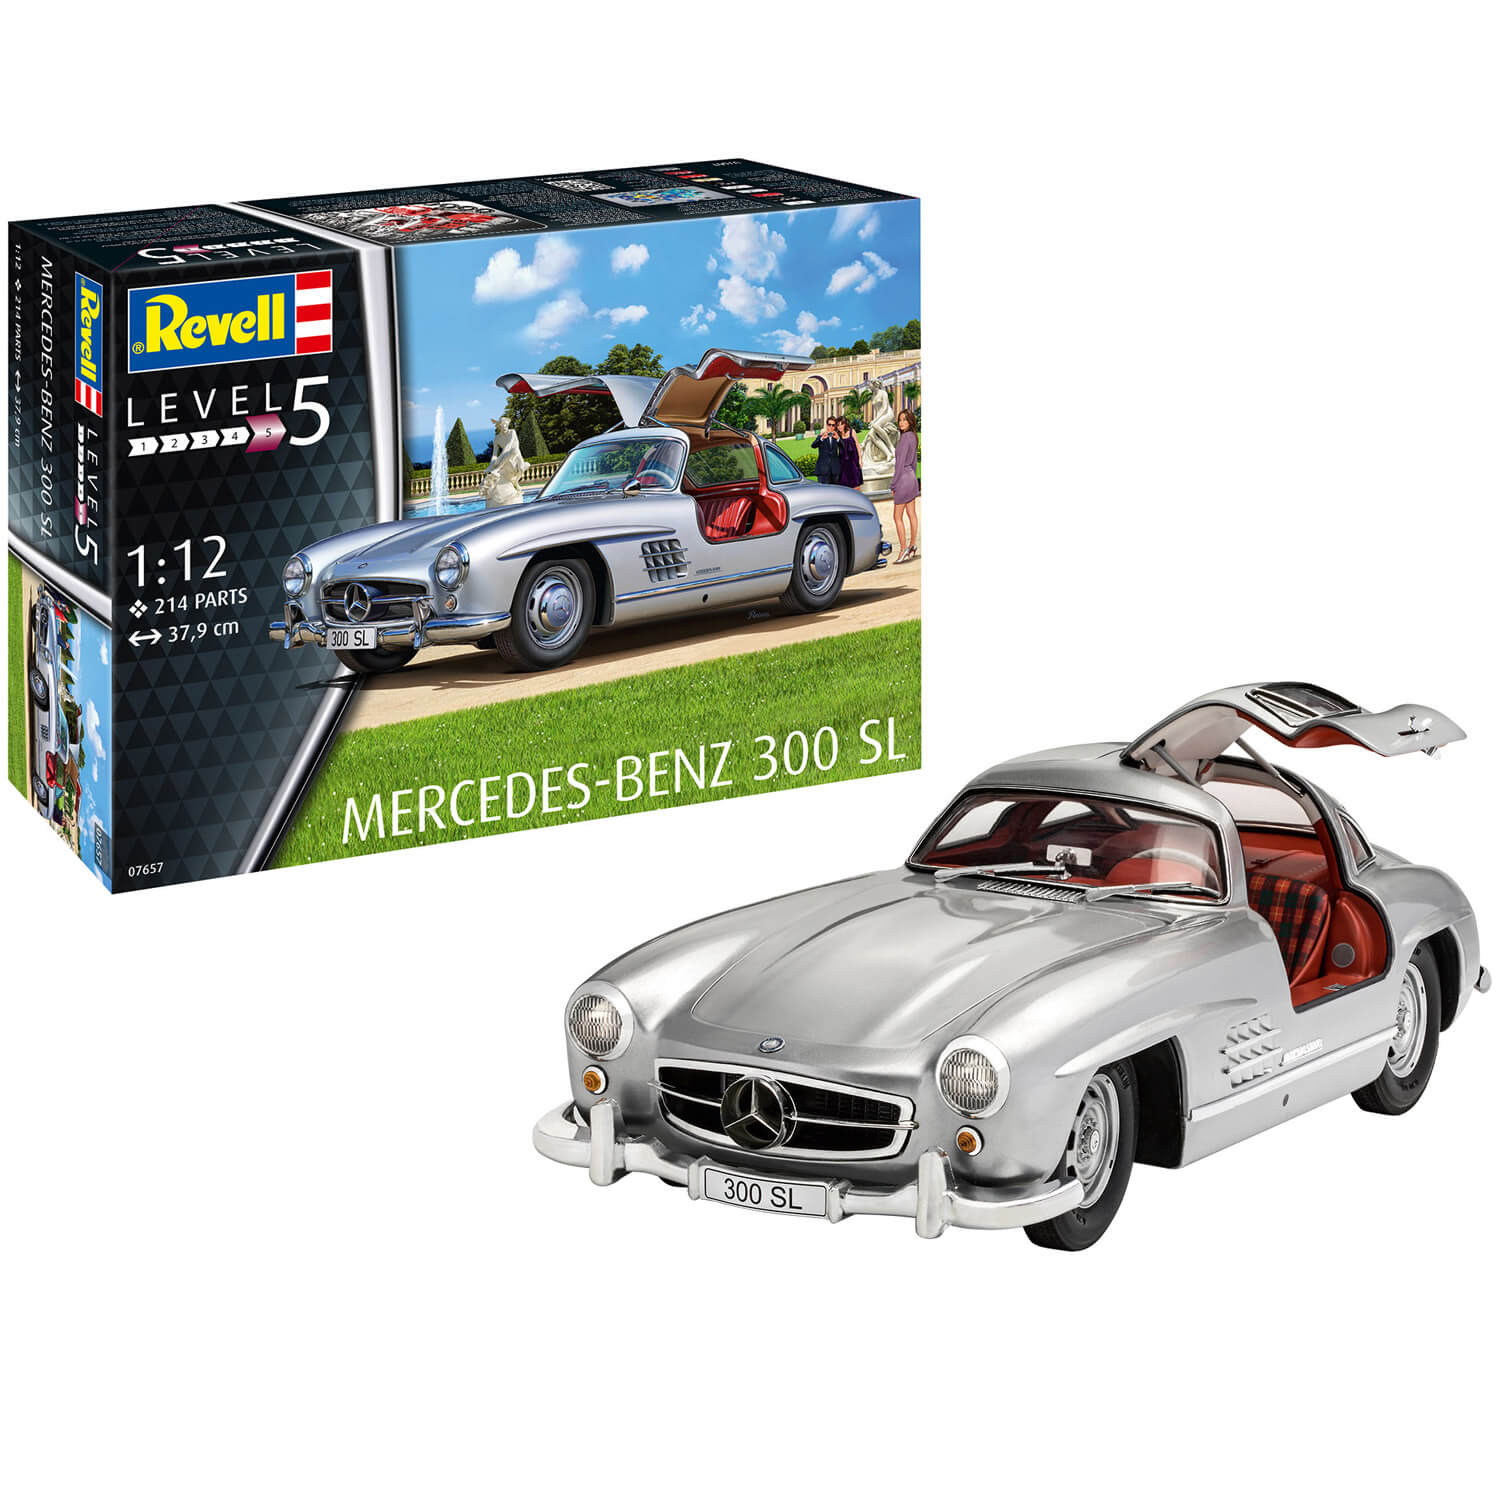 Maquette voiture : Mercedes Benz 300 SL - Jeux et jouets Revell